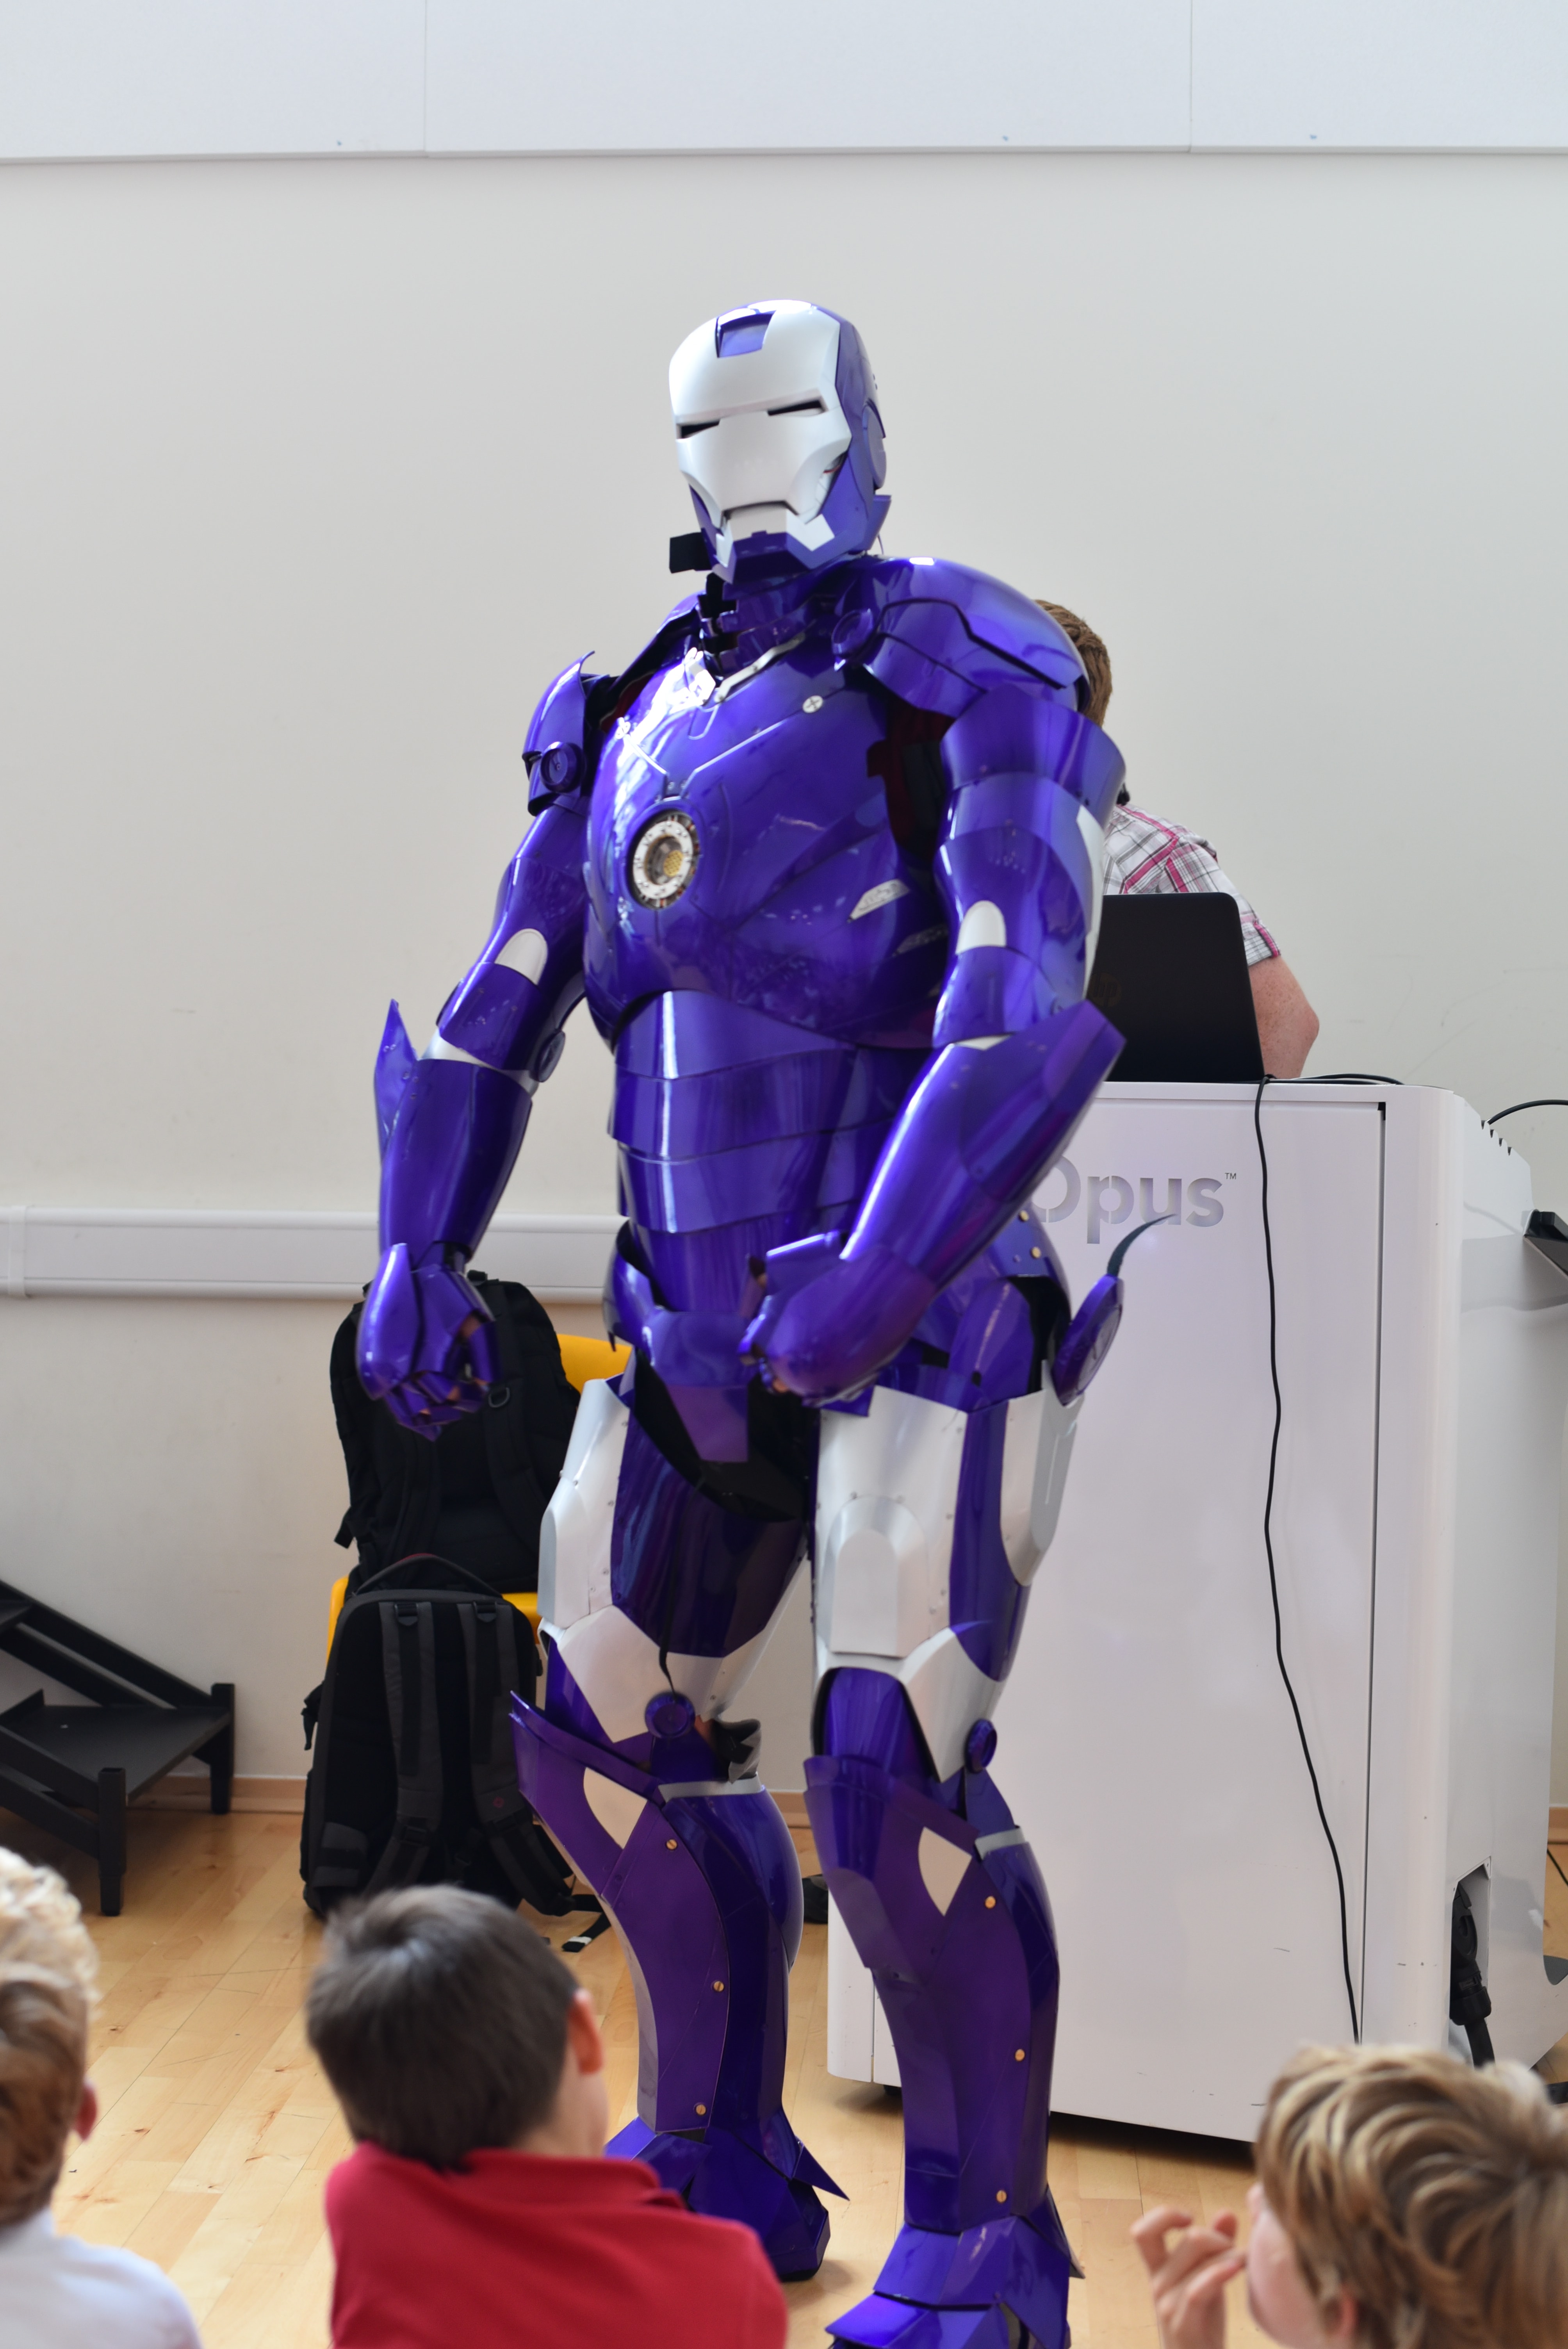 Ironamn suit at southville school - robotics outreach